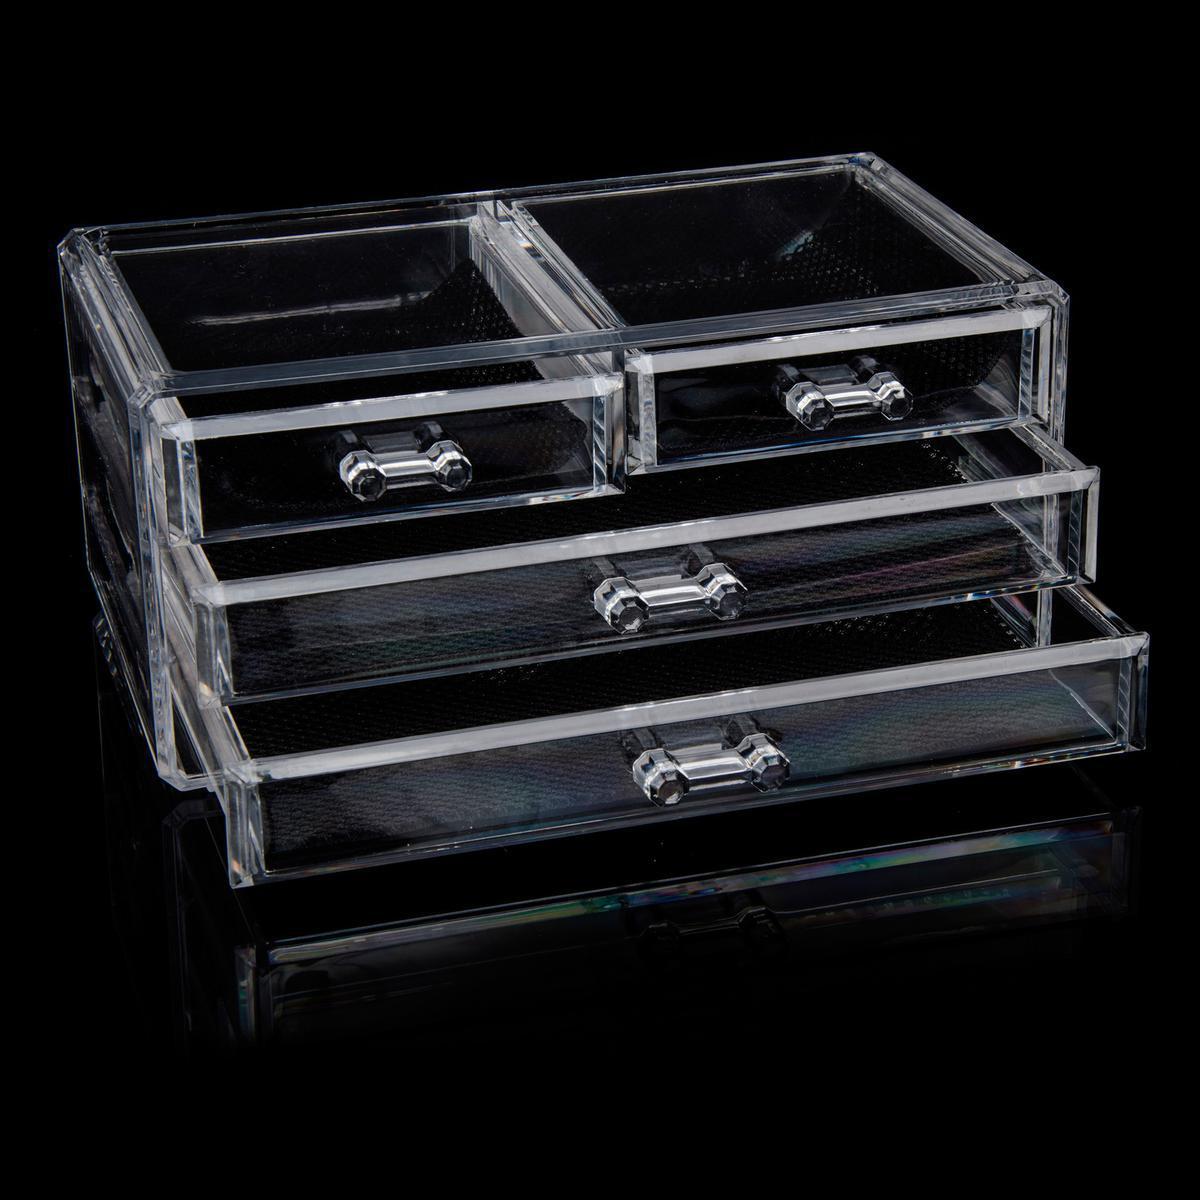 Boîte rangement cosmétiques - Acrylique - 24 x 15,5 x H 11,3 cm - Transparent